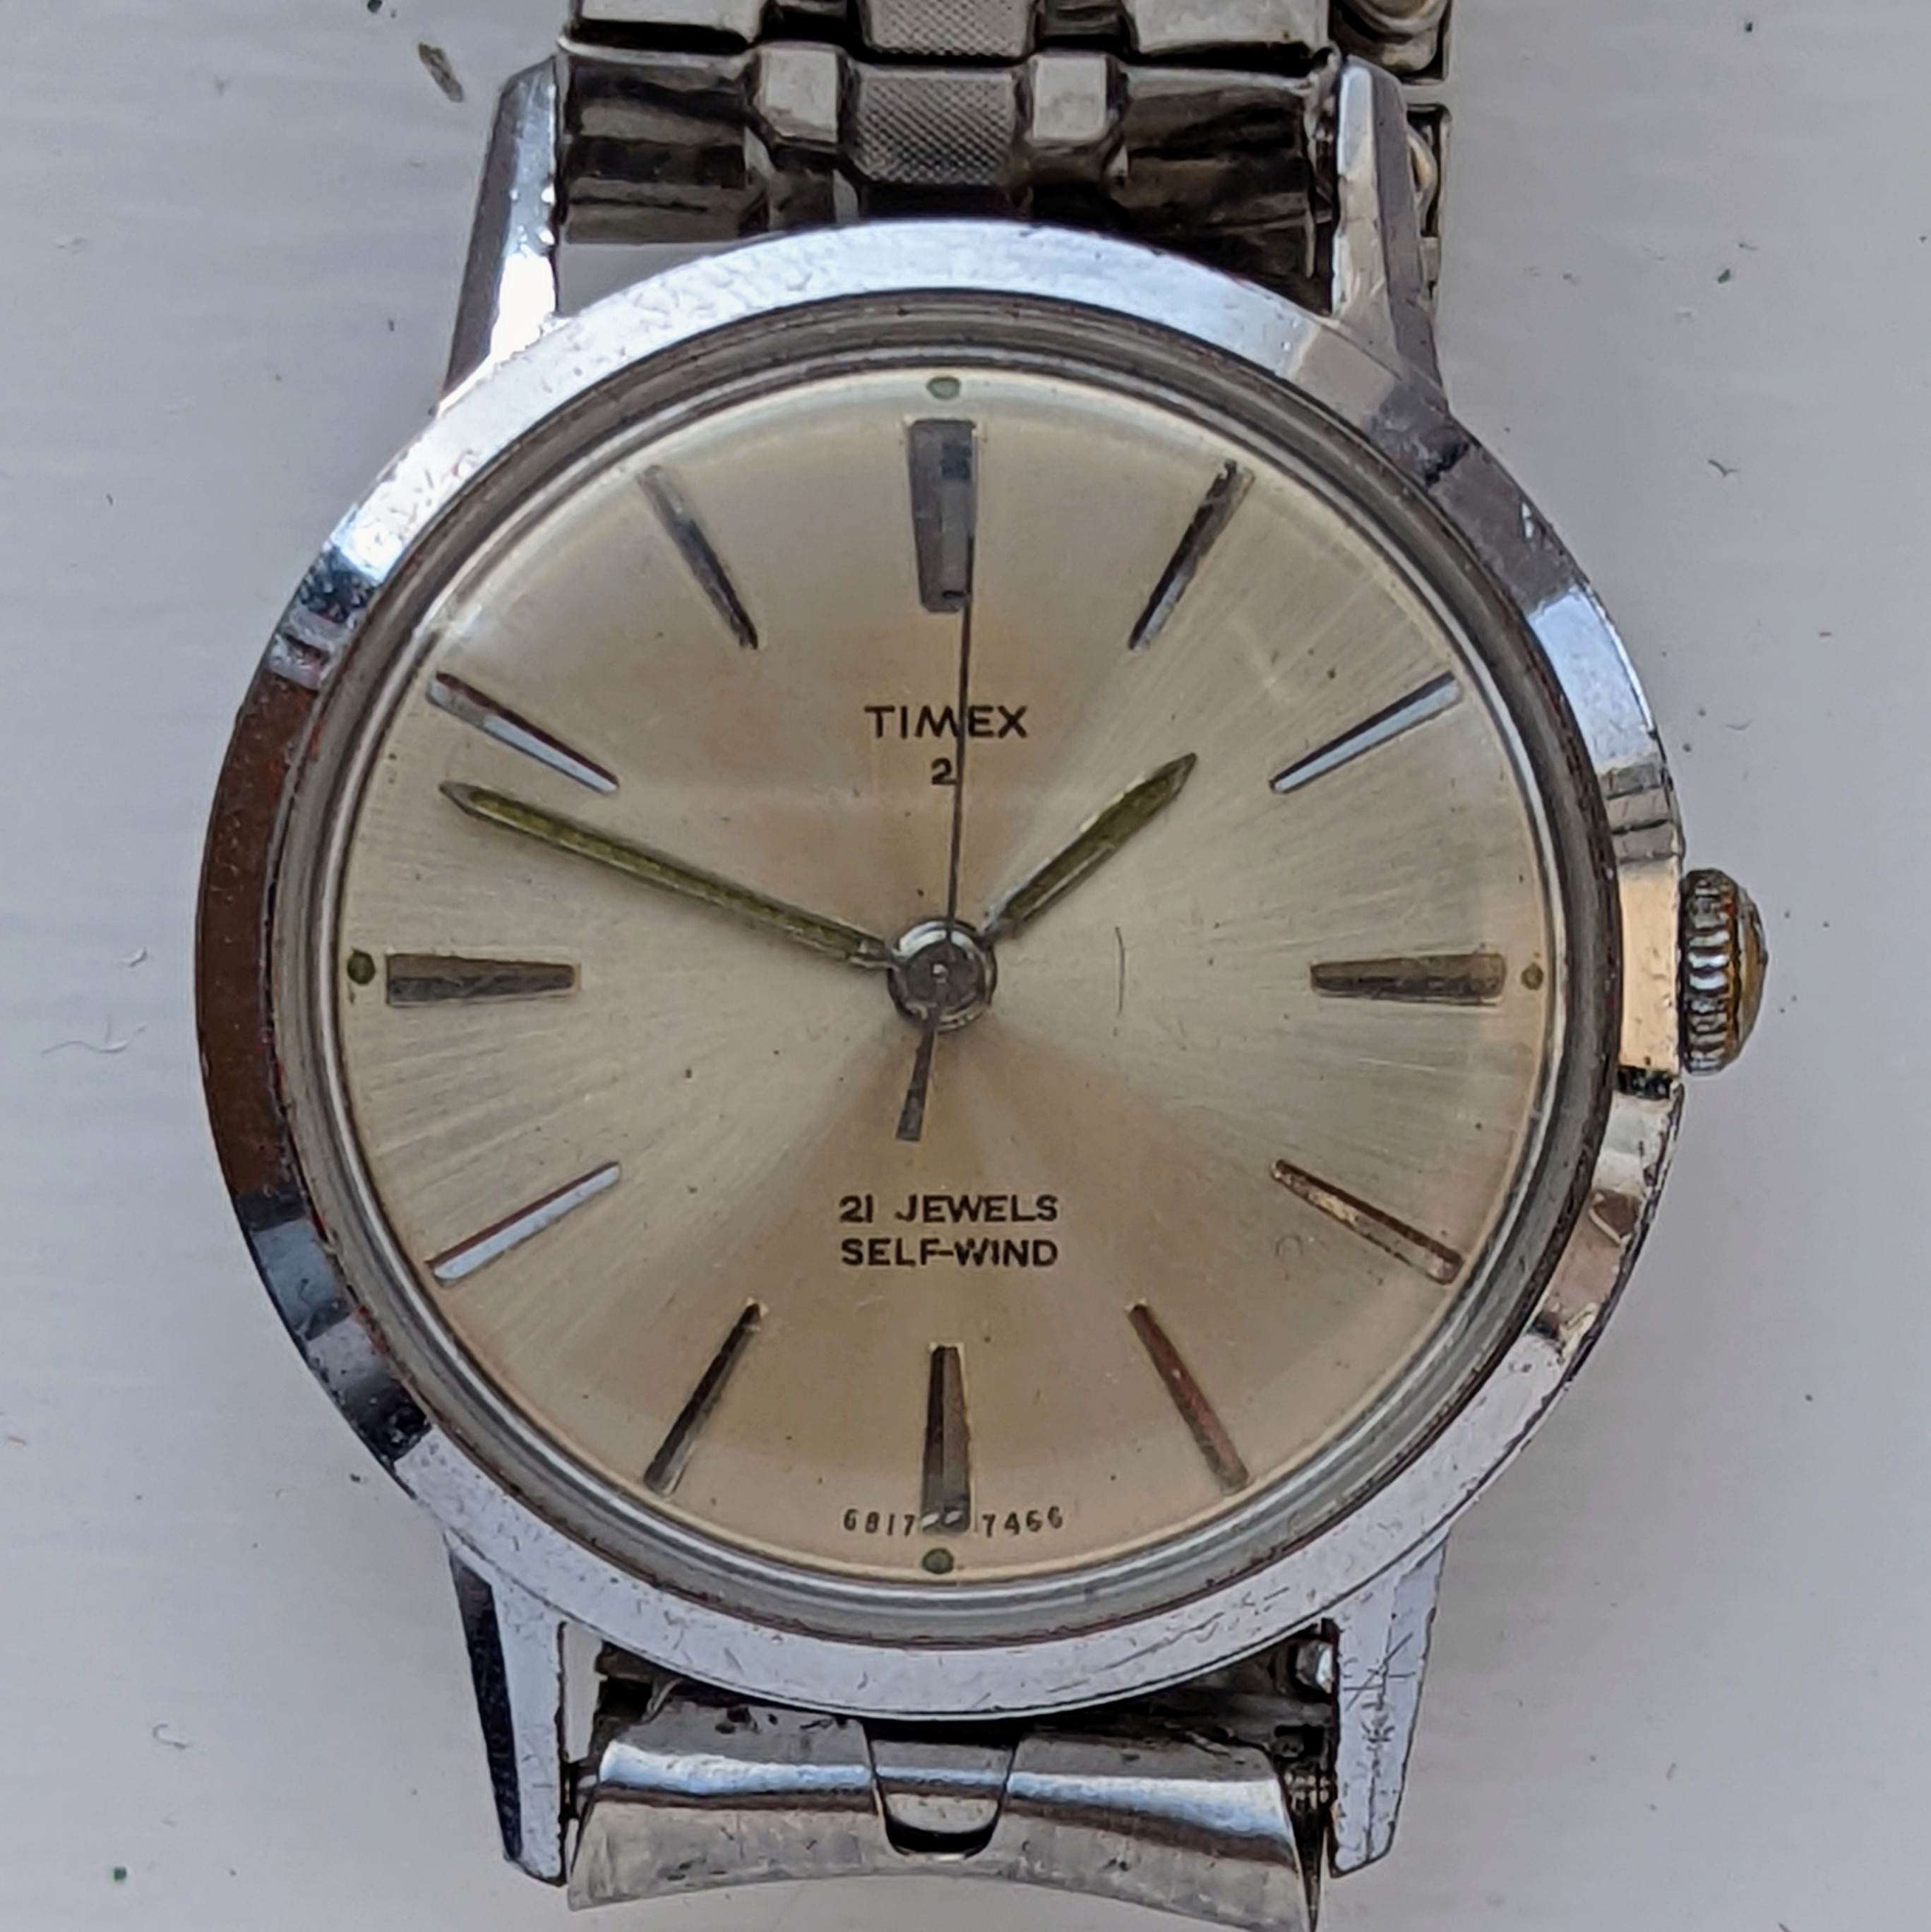 Timex 21 Jewel 6817 7466 [1966] Prestige